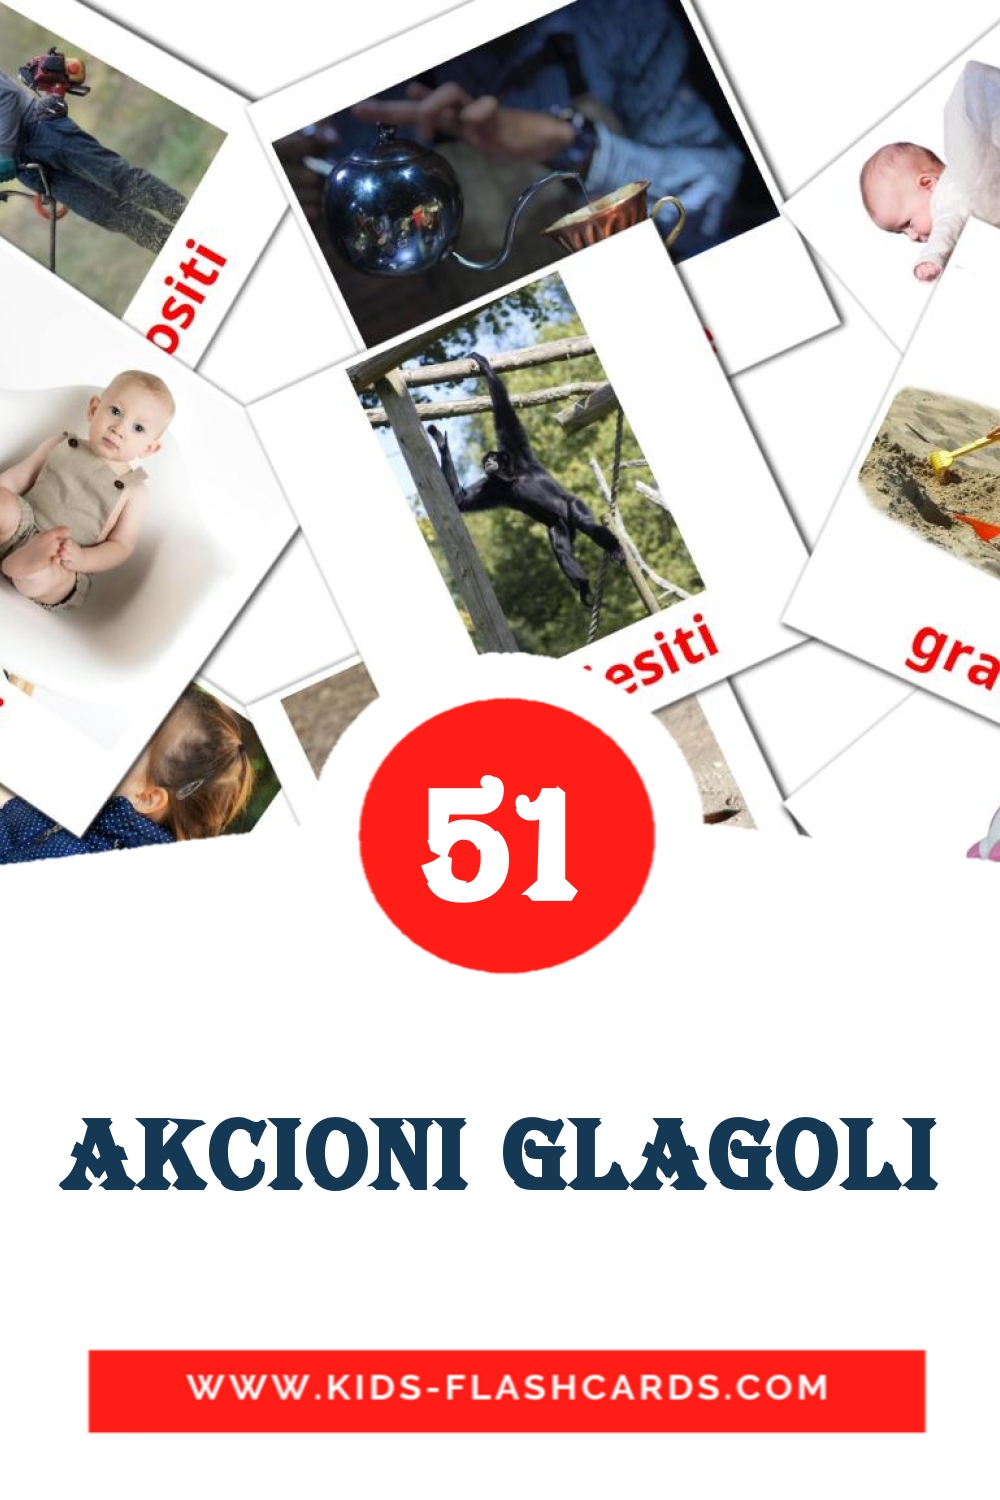 51 akcioni glagoli Bildkarten für den Kindergarten auf боснийском